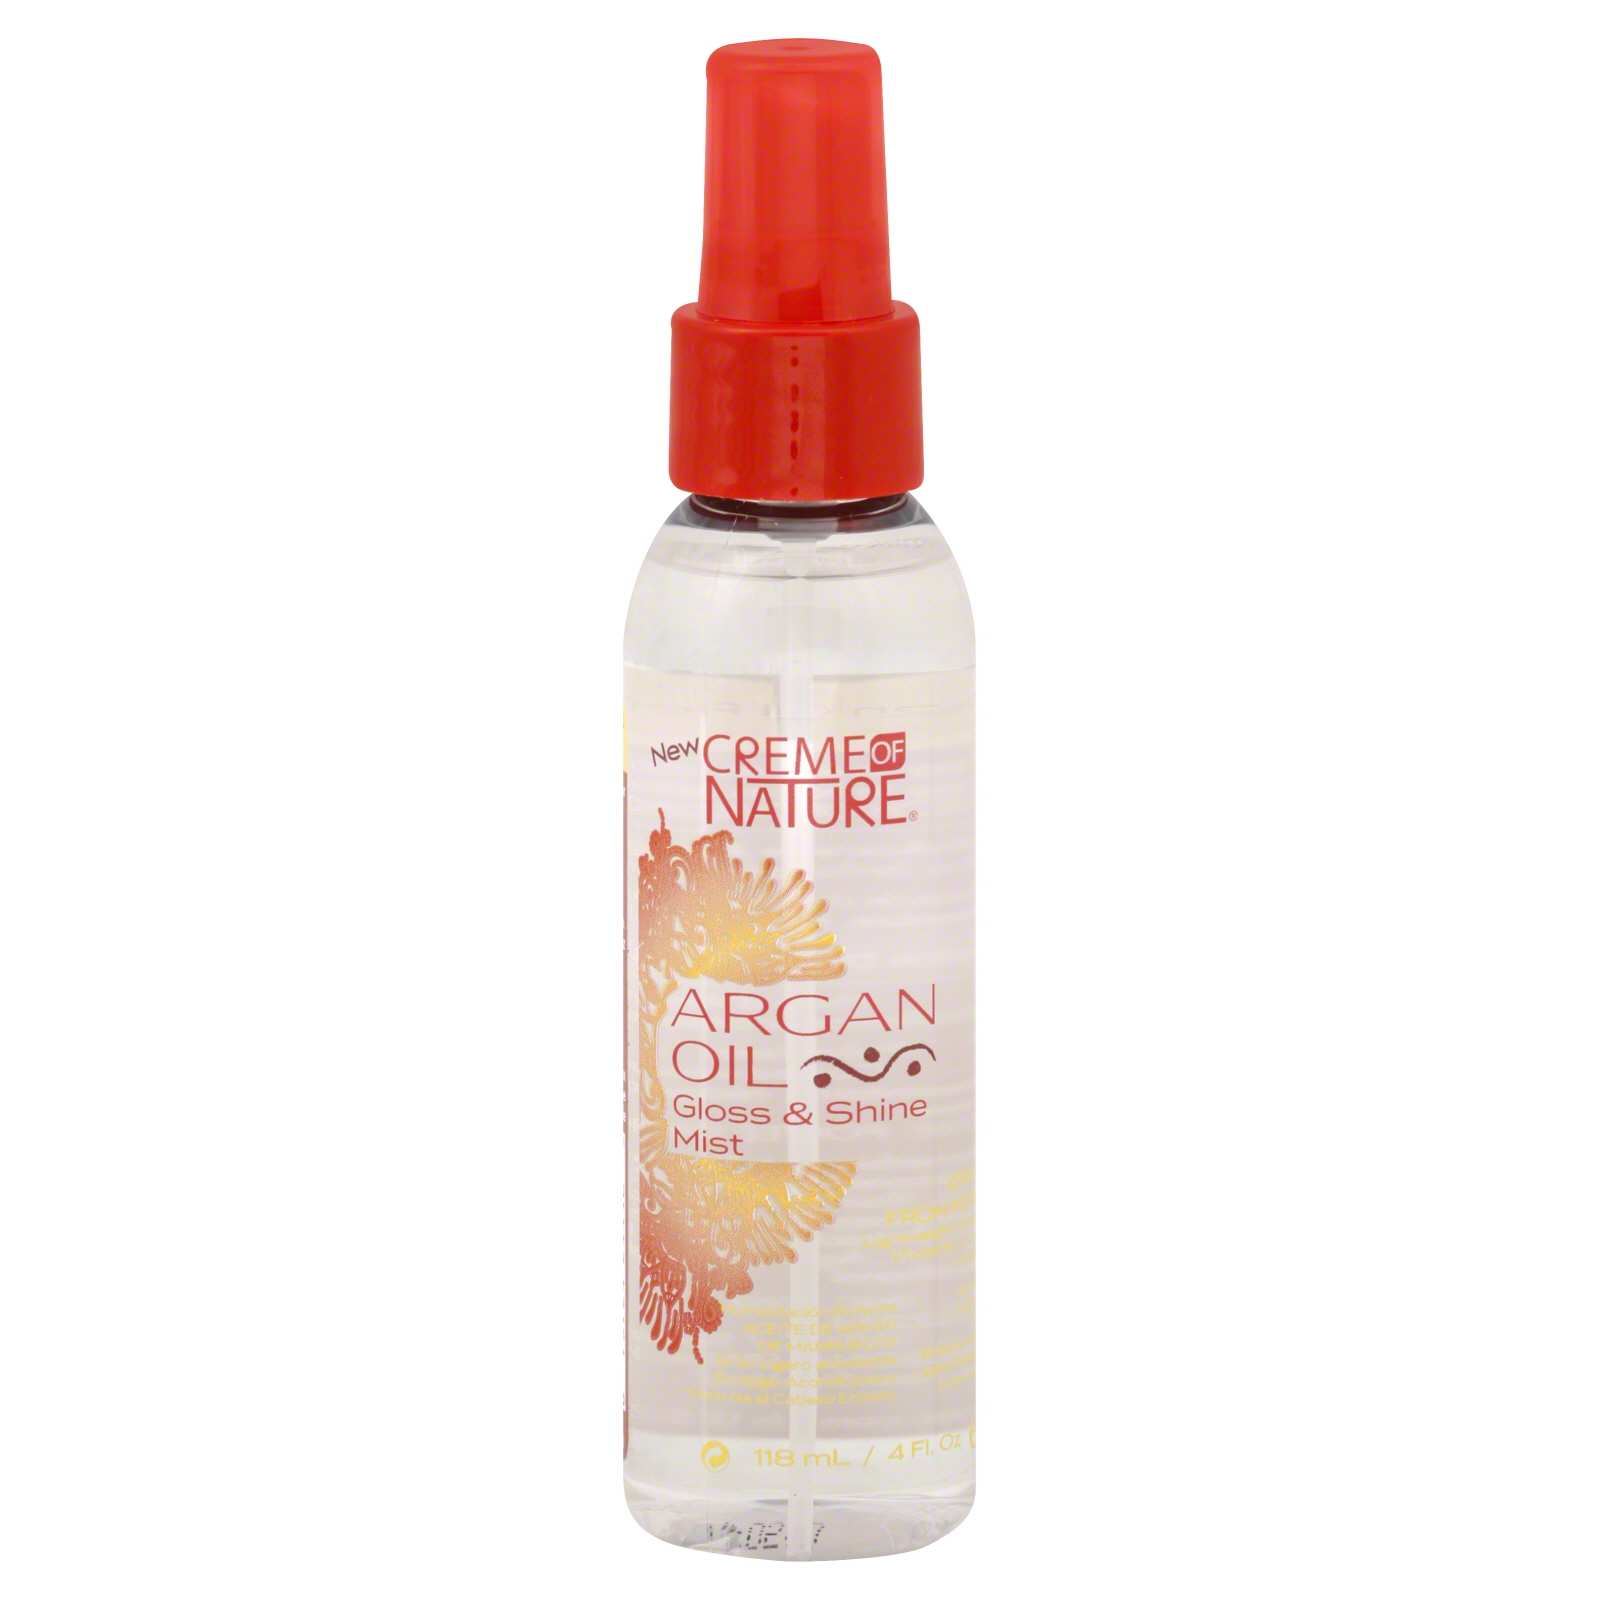 Creme of Nature Gloss & Shine Mist. Argan Oil, 4 fl oz (118 ml)